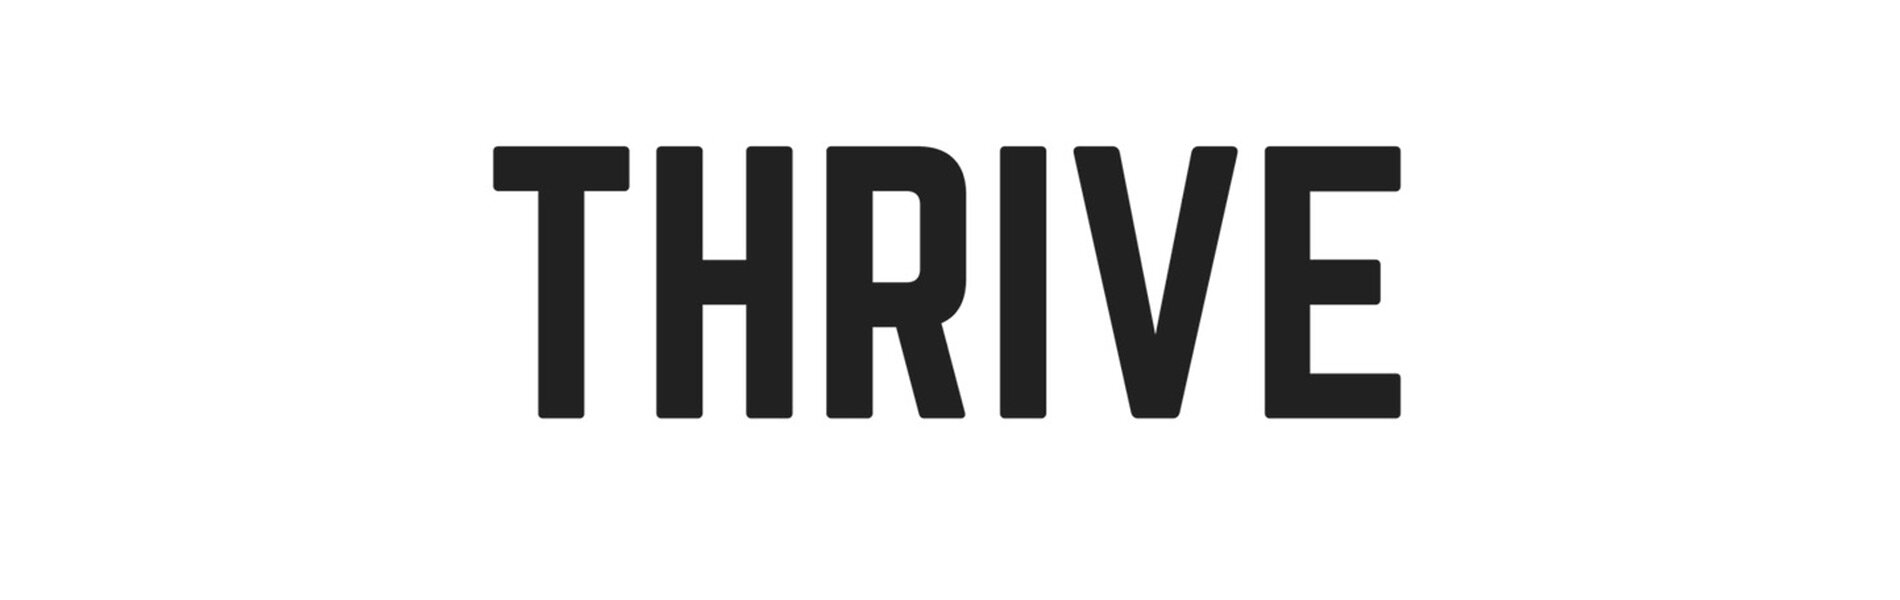 thrive-magazine-featured.jpg